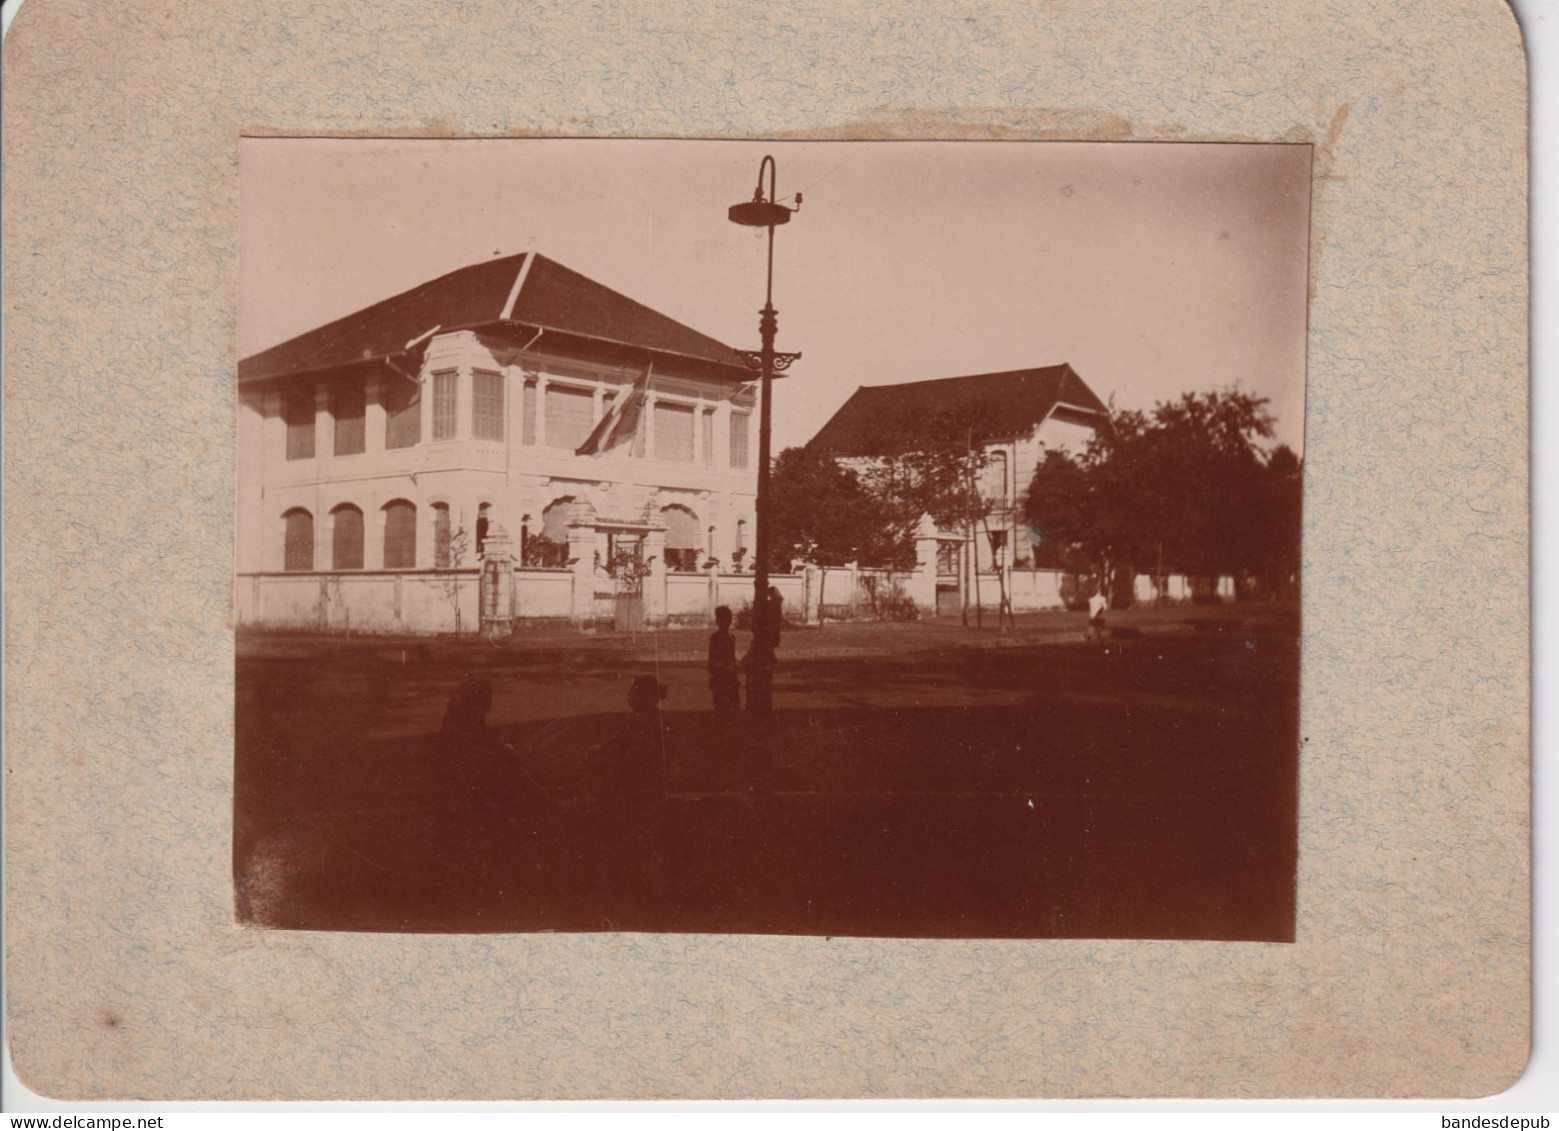 Photo Originale Ancienne Maison ASIE CAMBODGE PNOM PENH Maison Habitation Coloniale Collée Sur Carton - Asien